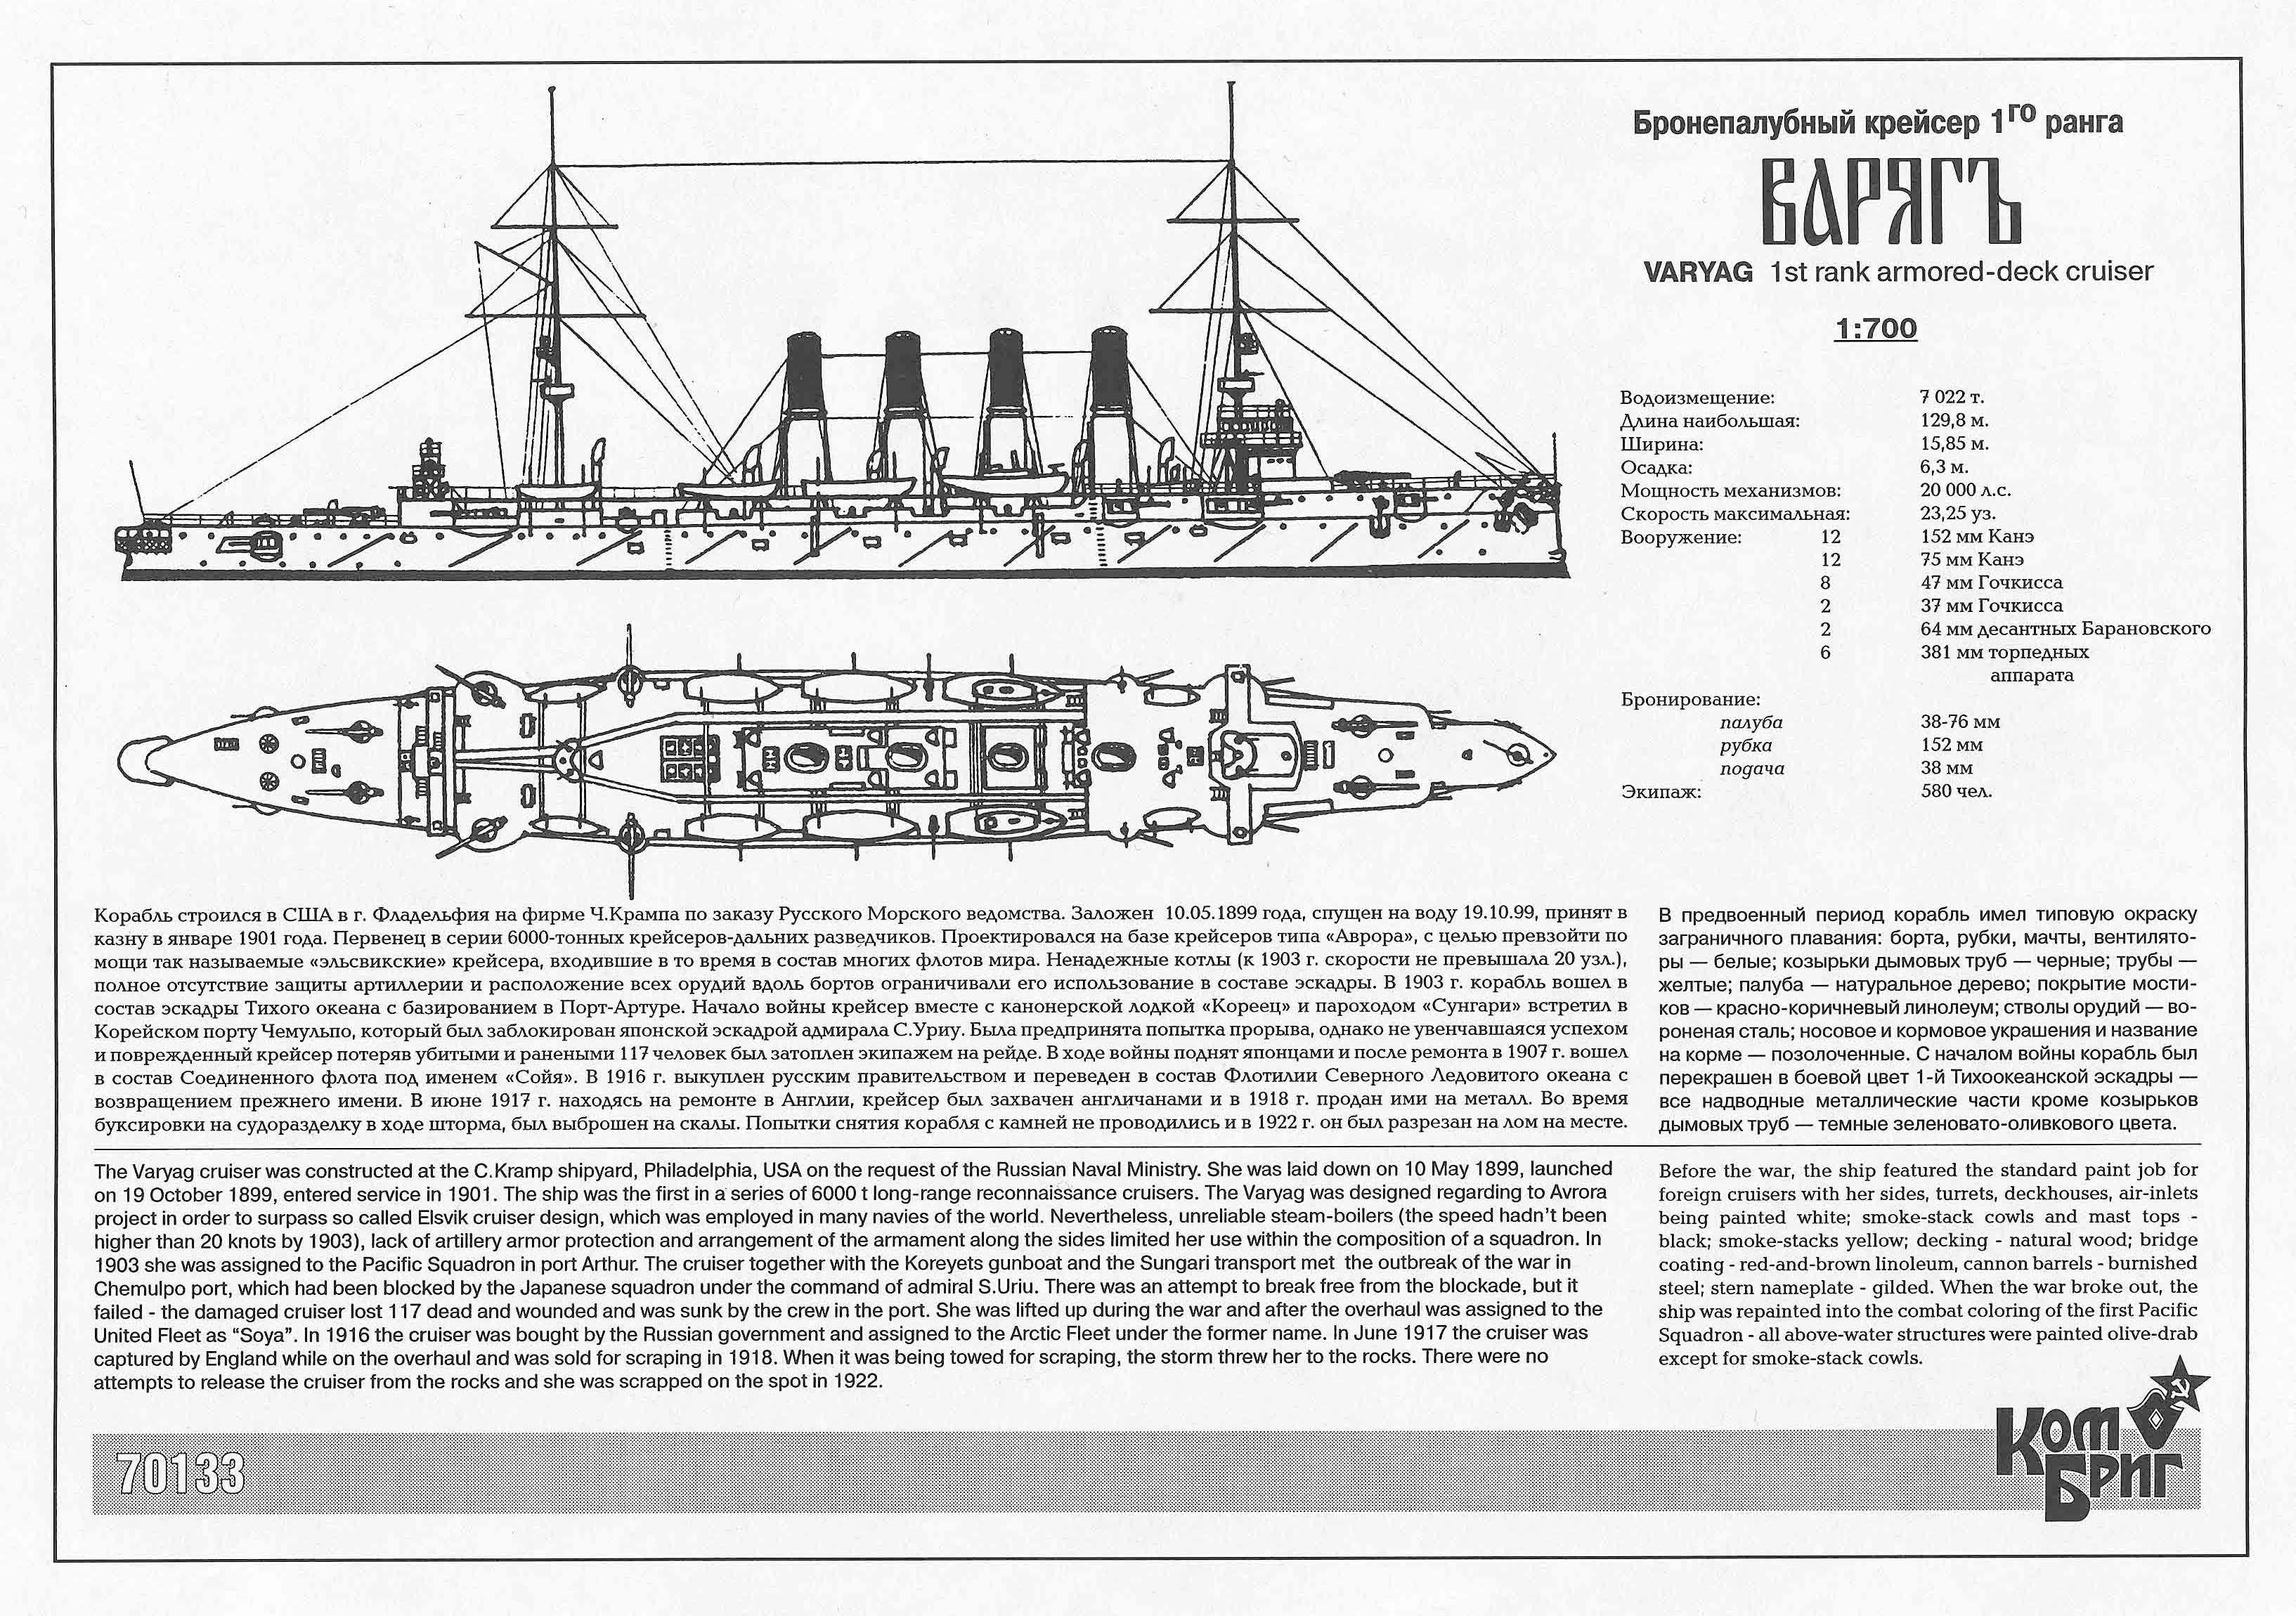 Крейсер "варяг" - история подвига бронепалубного корабля в русско-японской войне